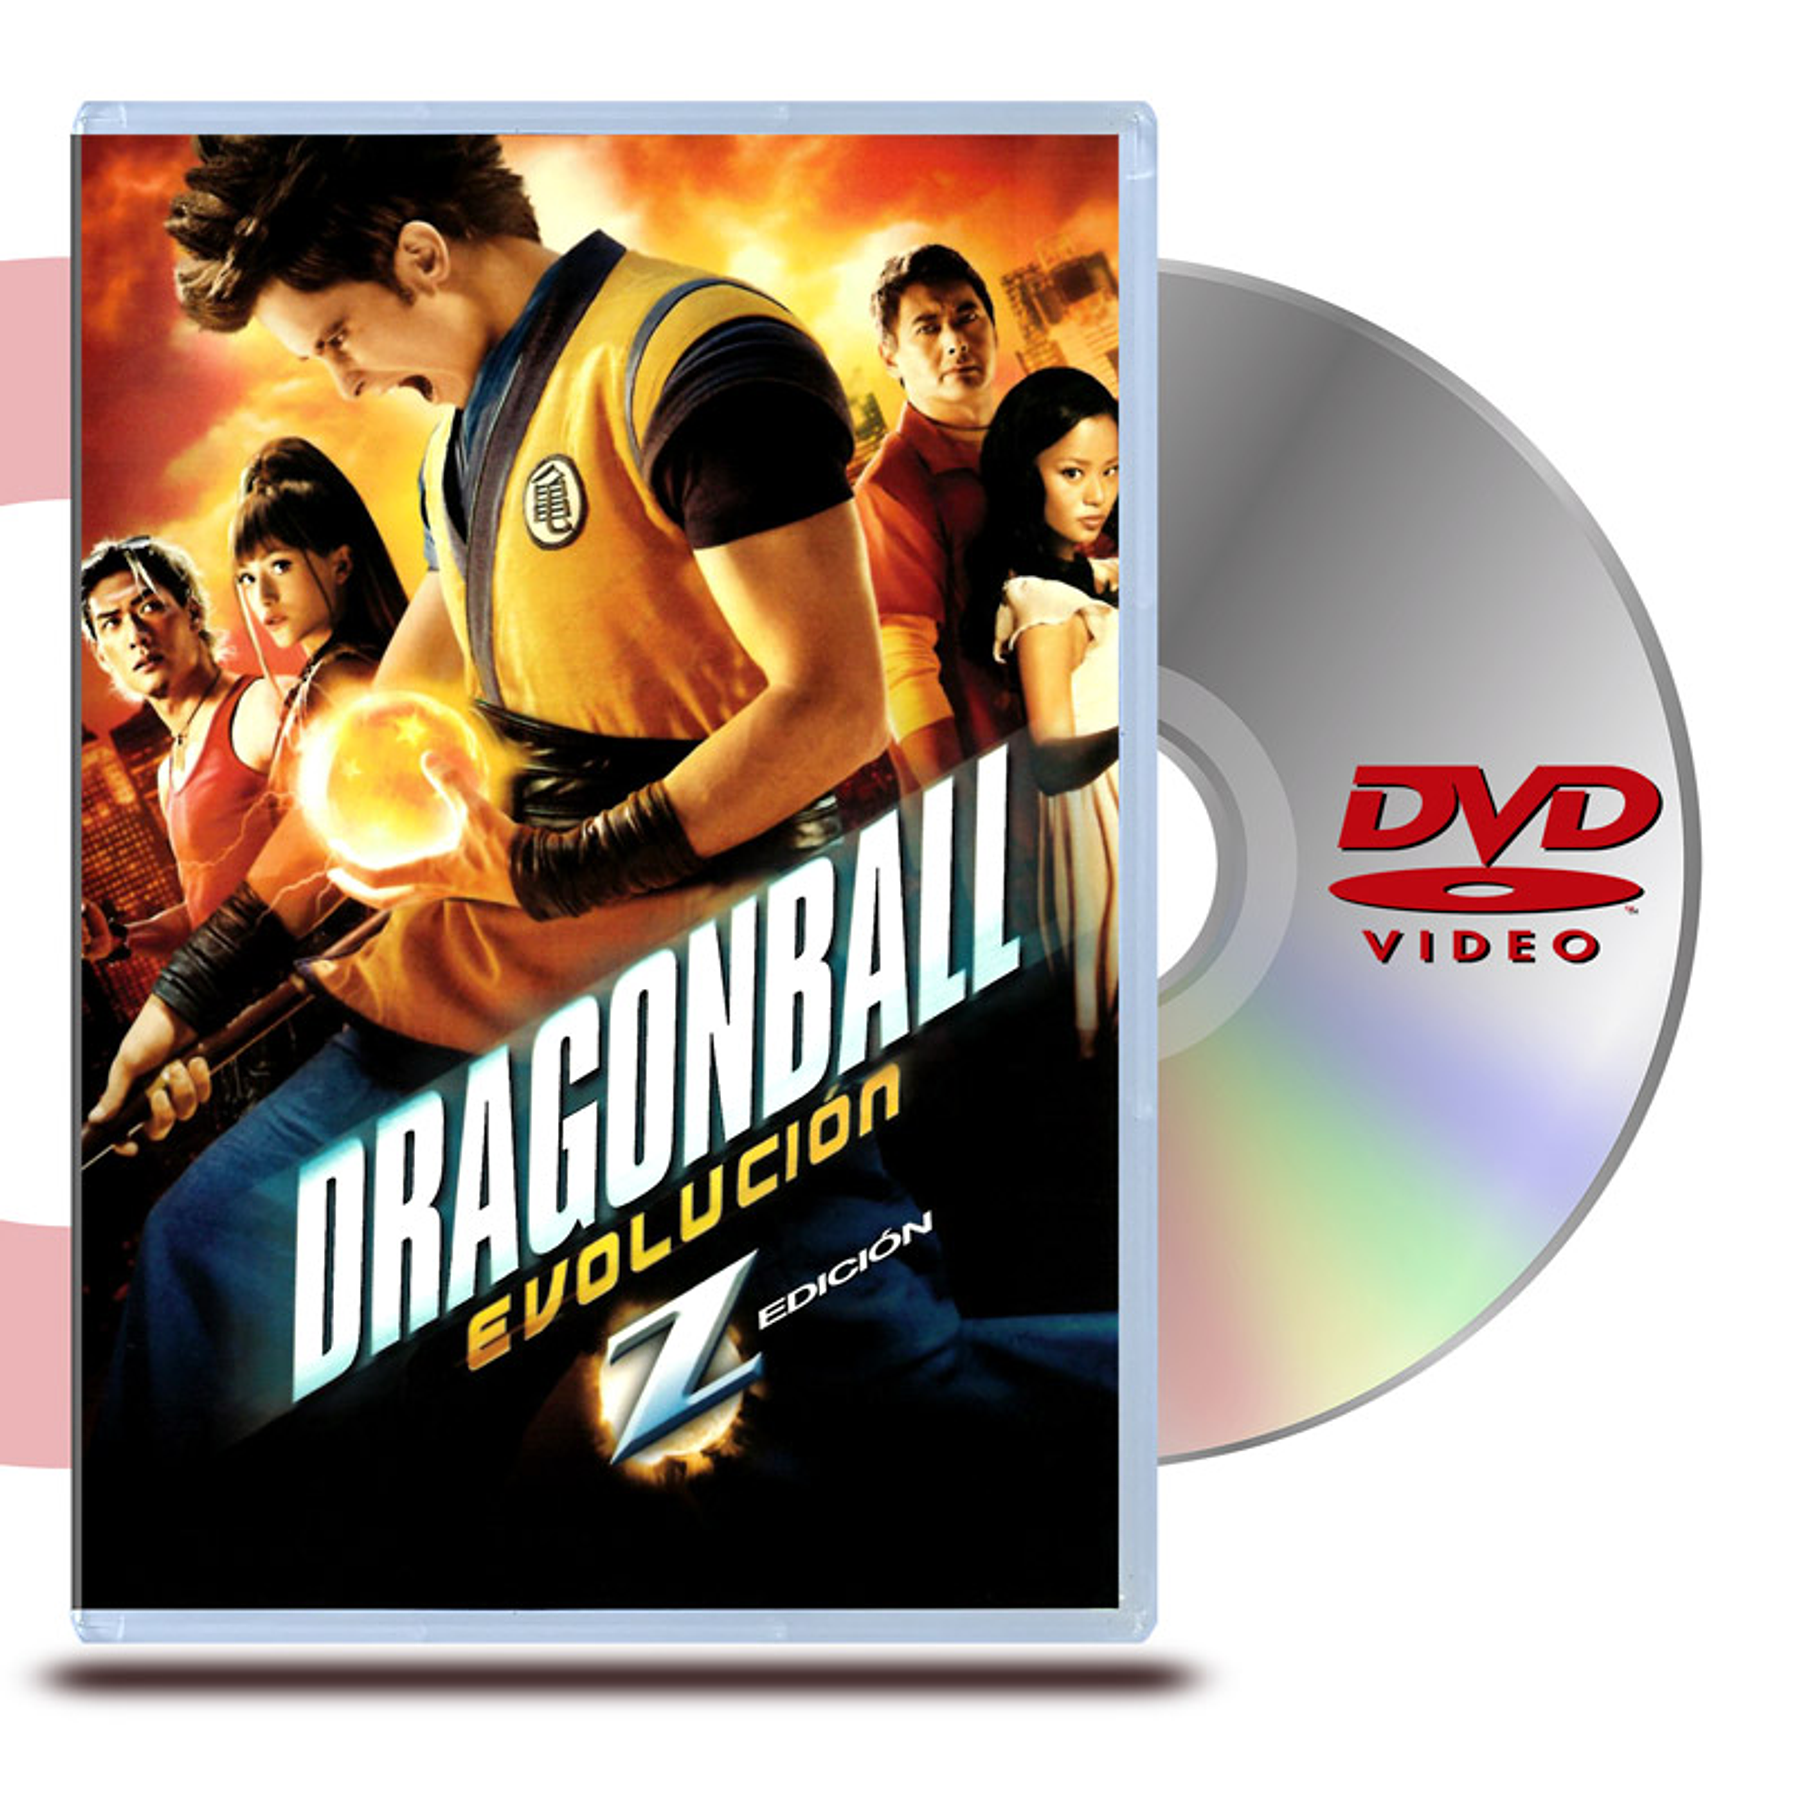 dragonball evolution - Comprar Filmes em DVD no todocoleccion